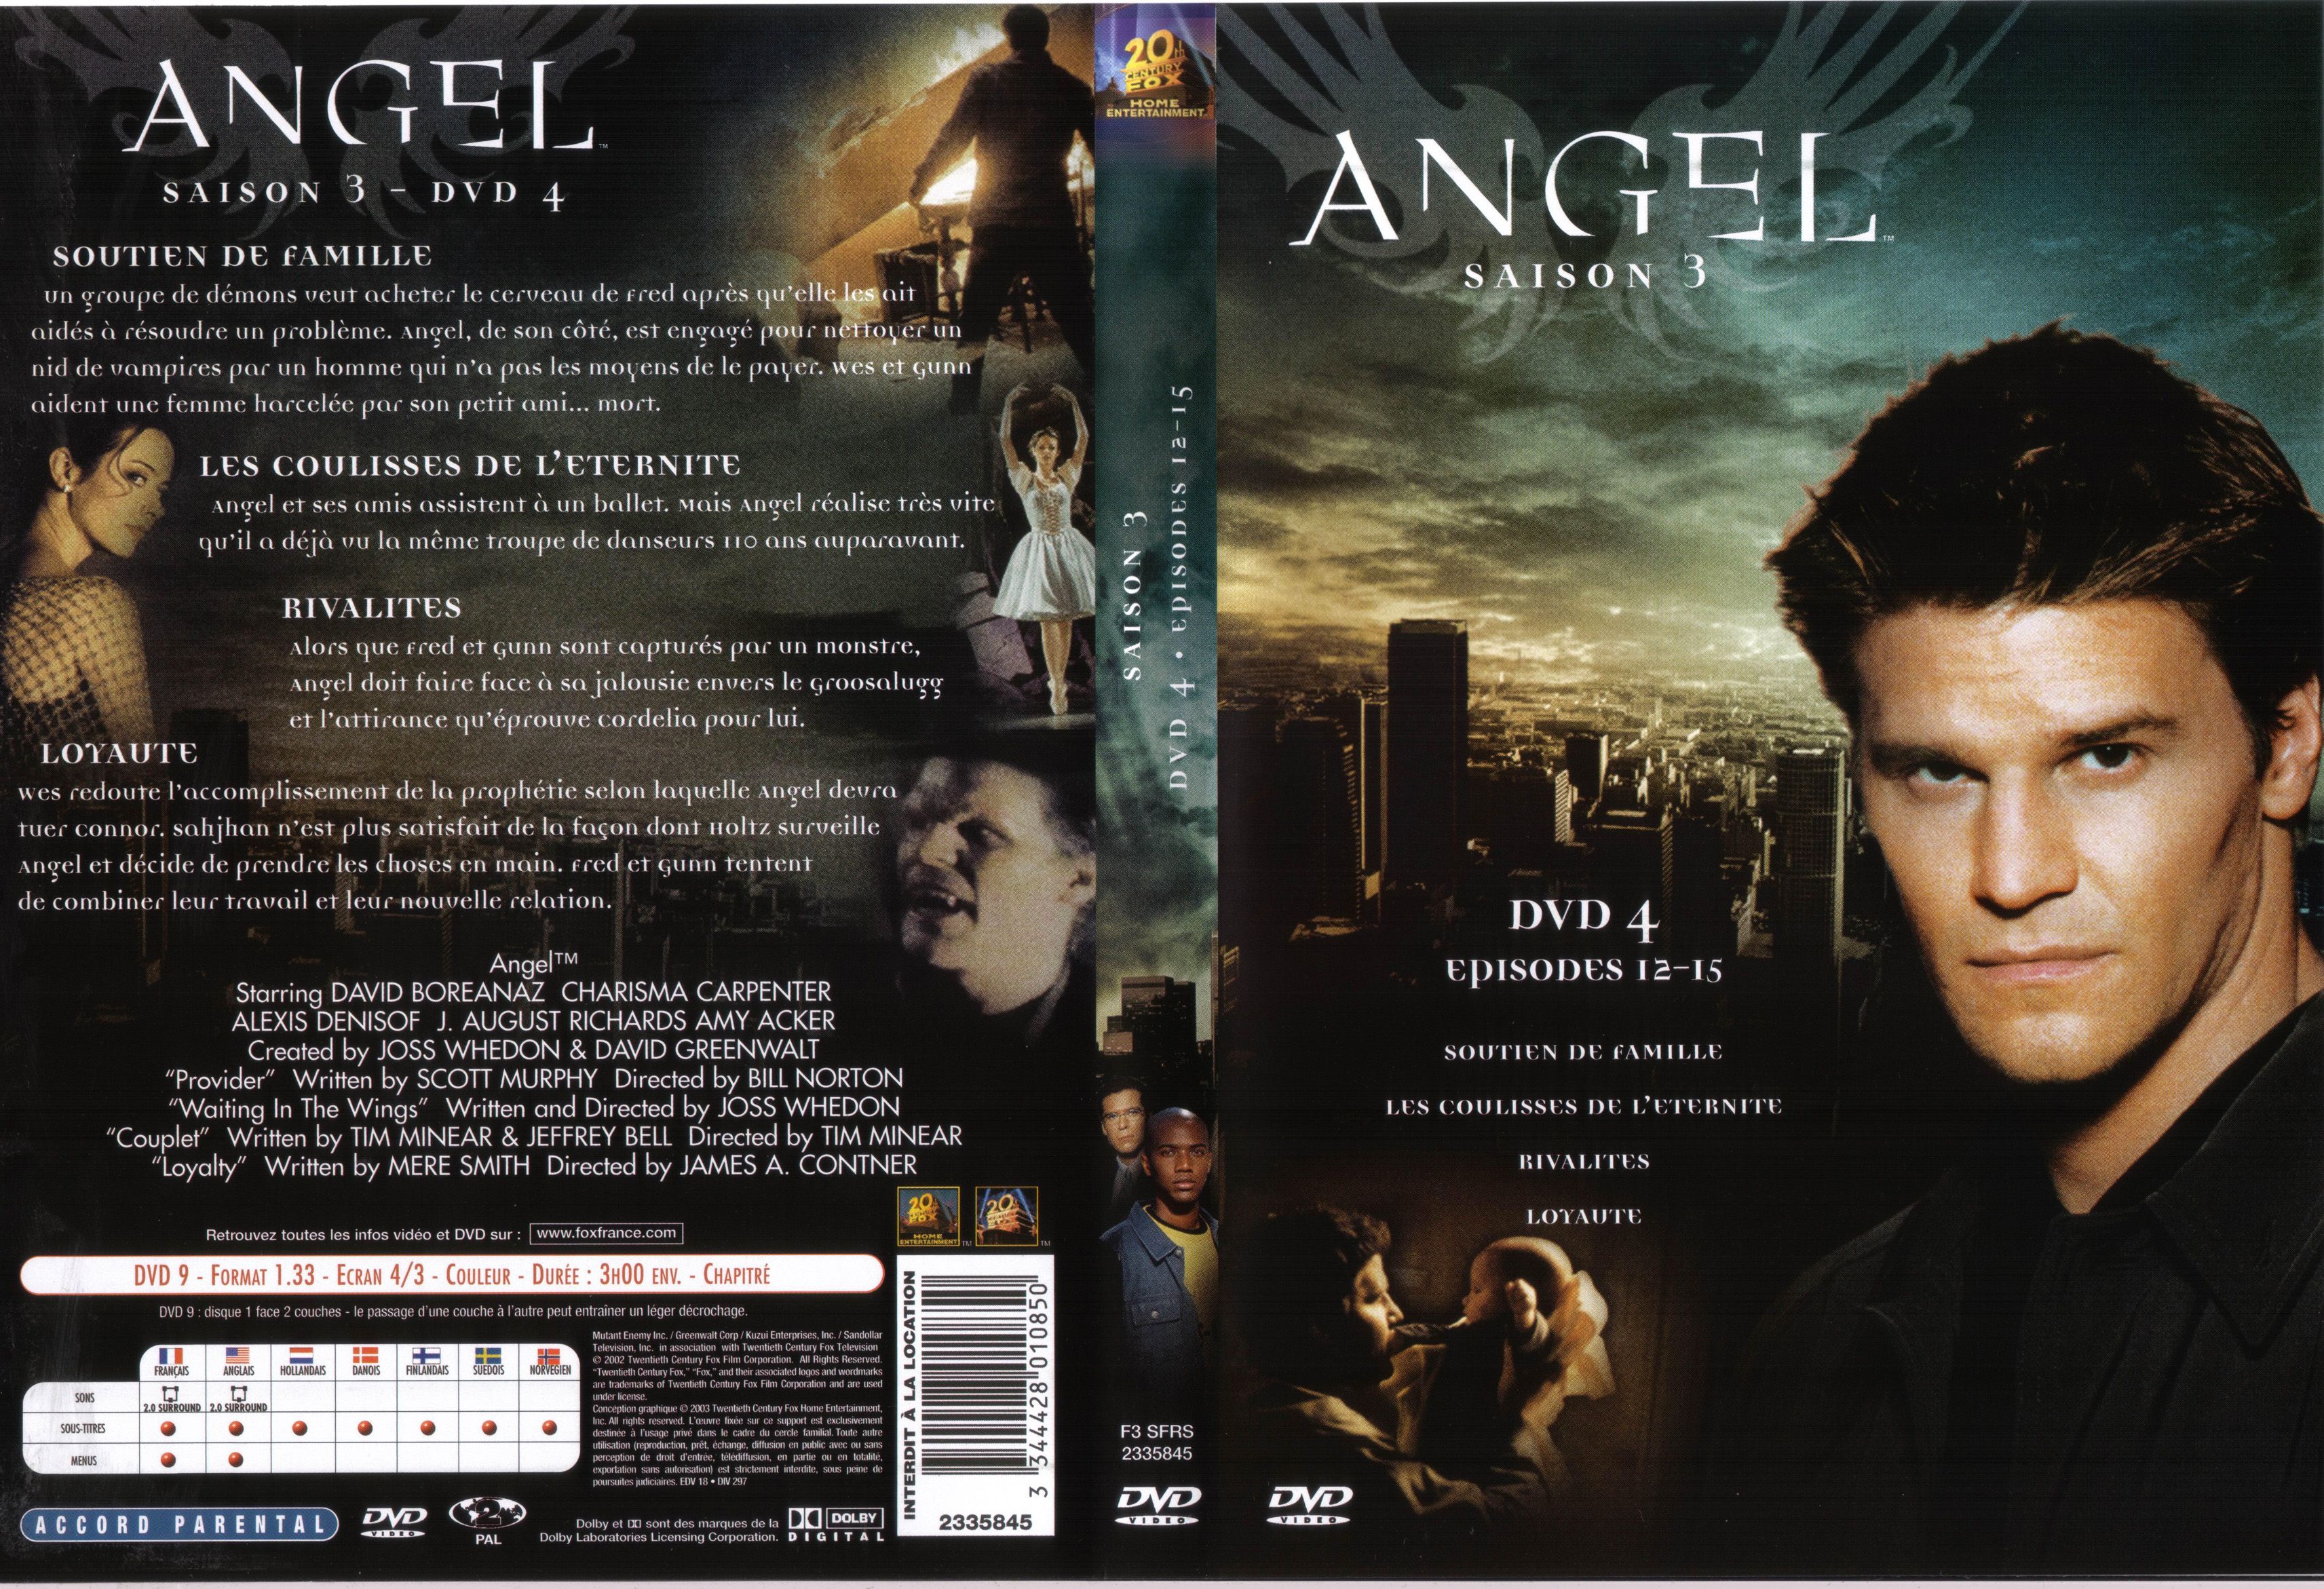 Jaquette DVD Angel saison 3 dvd 4